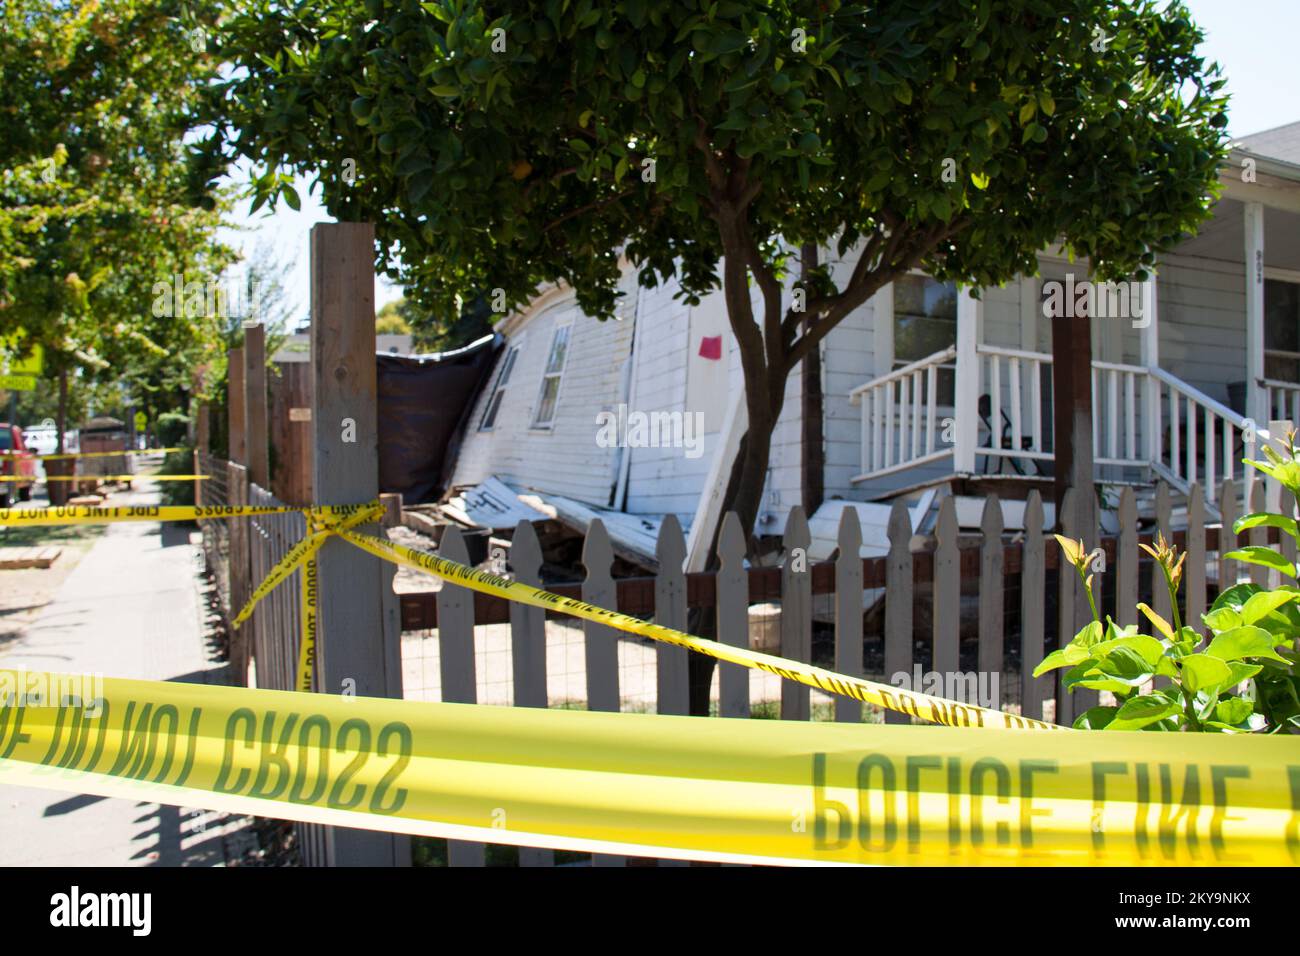 Umgeben von gelbem Warnband, wurde dieses Haus schwer beschädigt durch ein Erdbeben der Stärke 6,0, das die Stadt Napa am 24.. August 2014 um 3:20AM Uhr erschütterte. Erdbeben In Kalifornien. Fotos zu Katastrophen- und Notfallmanagementprogrammen, Aktivitäten und Beamten Stockfoto